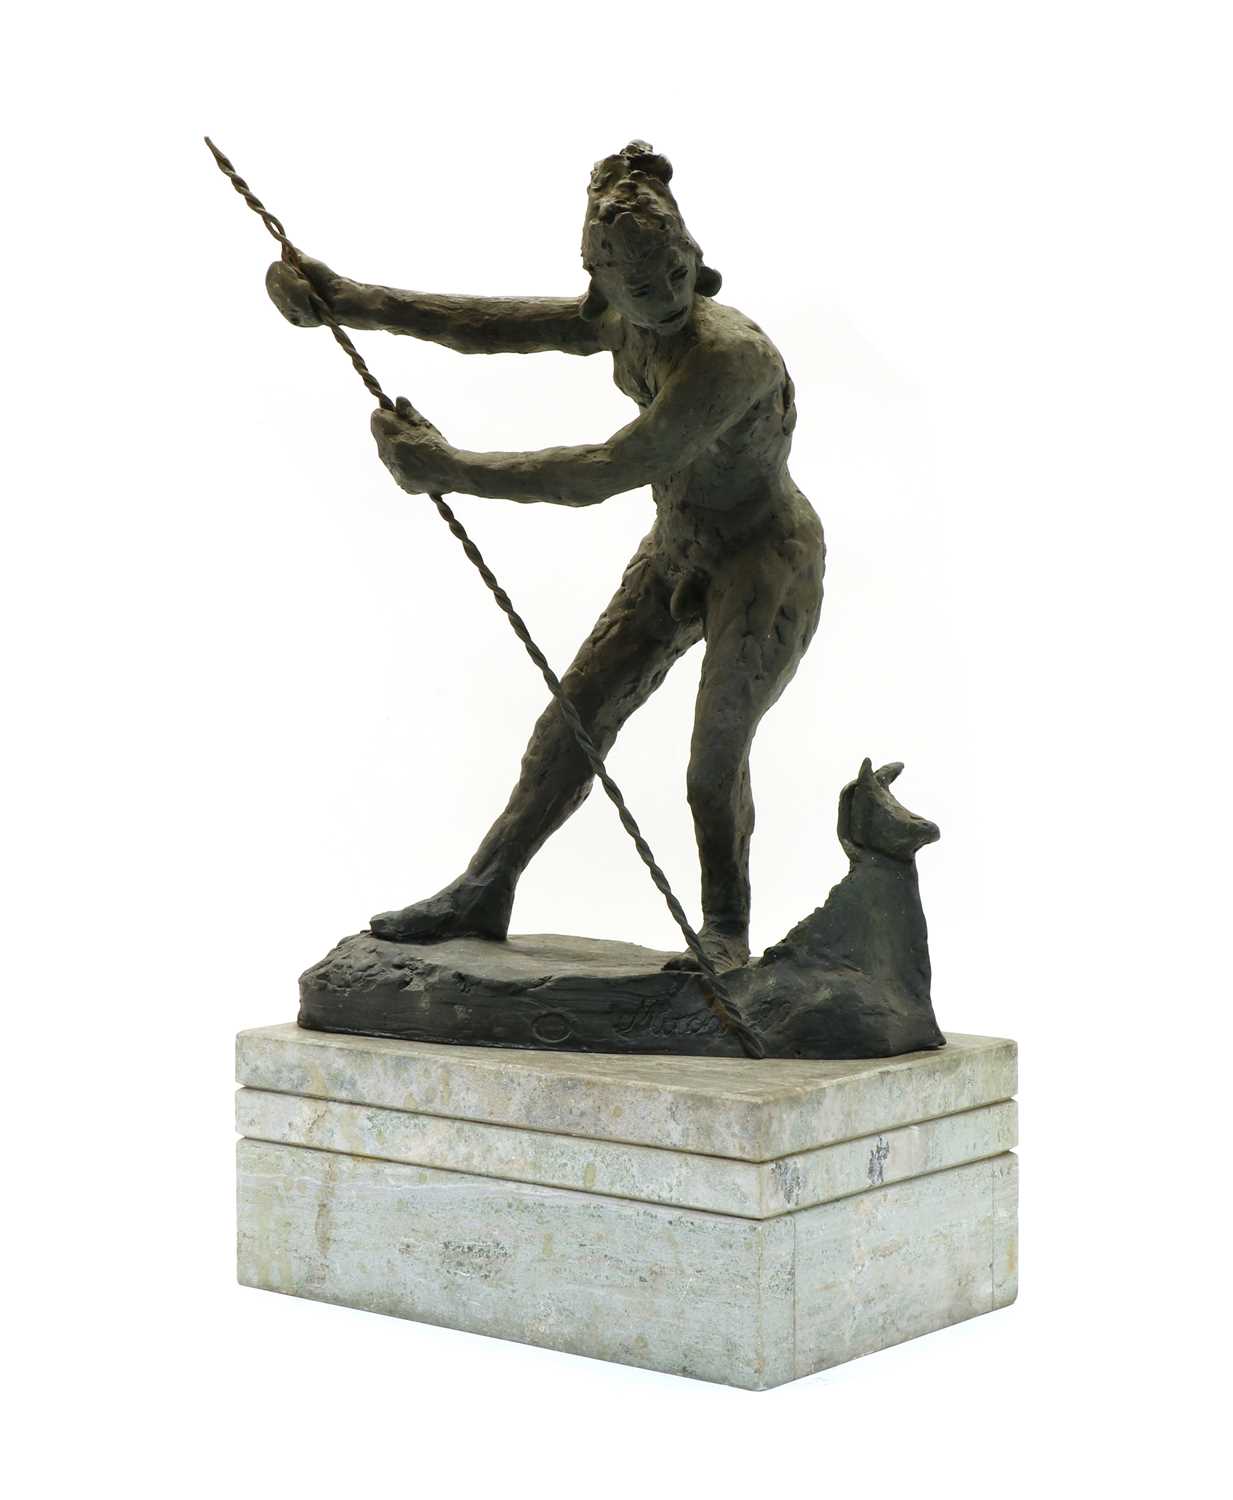 Lot 66 - A bronze sculpture